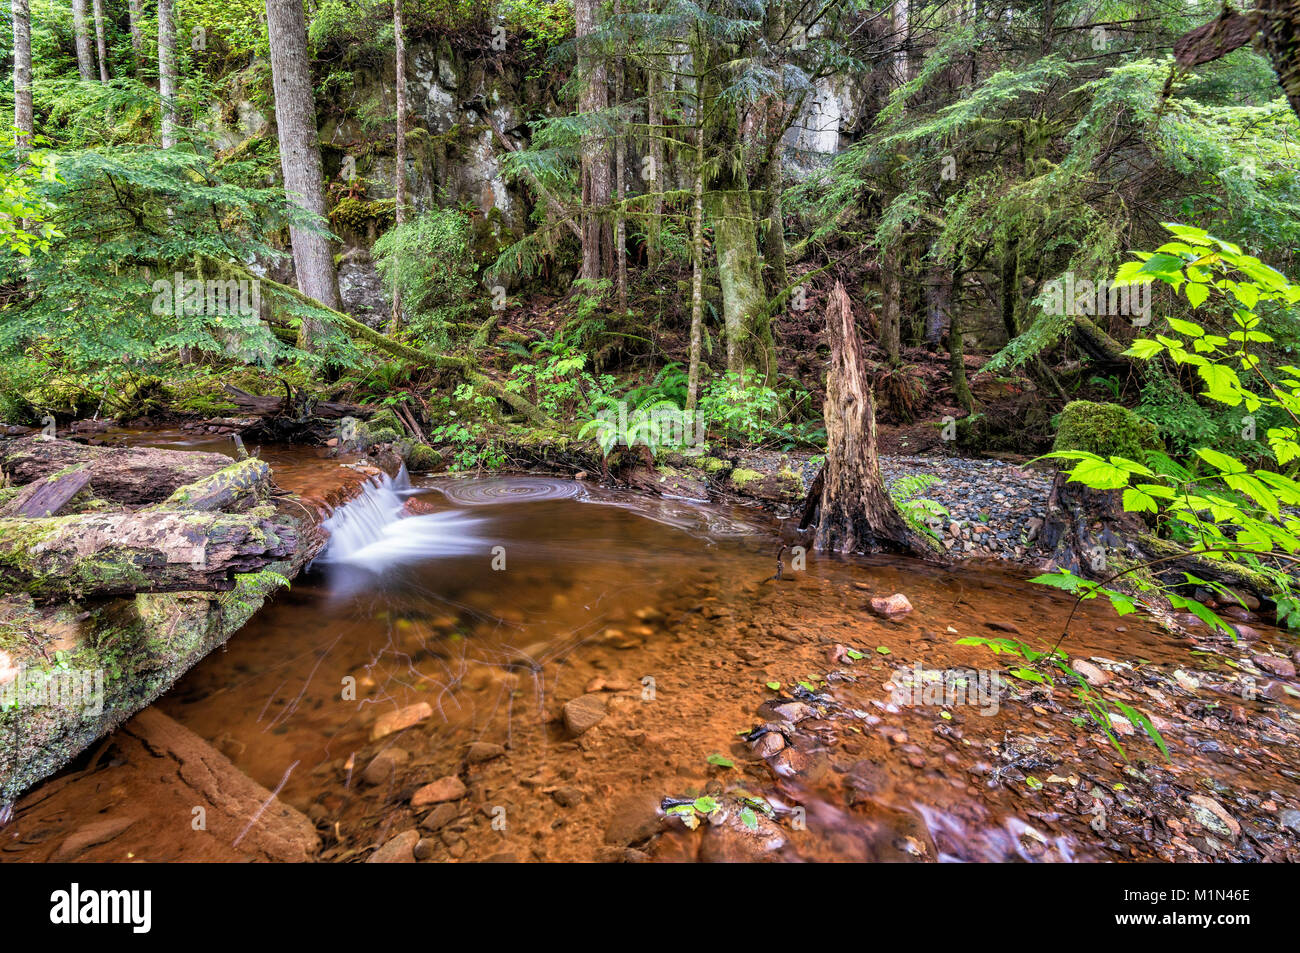 Petite cascade, un ruisseau, une forêt pluviale tempérée près de camping, Telegraph Cove Resorts près de Telegraph Cove, North Vancouver, British Columbia, Canada Banque D'Images